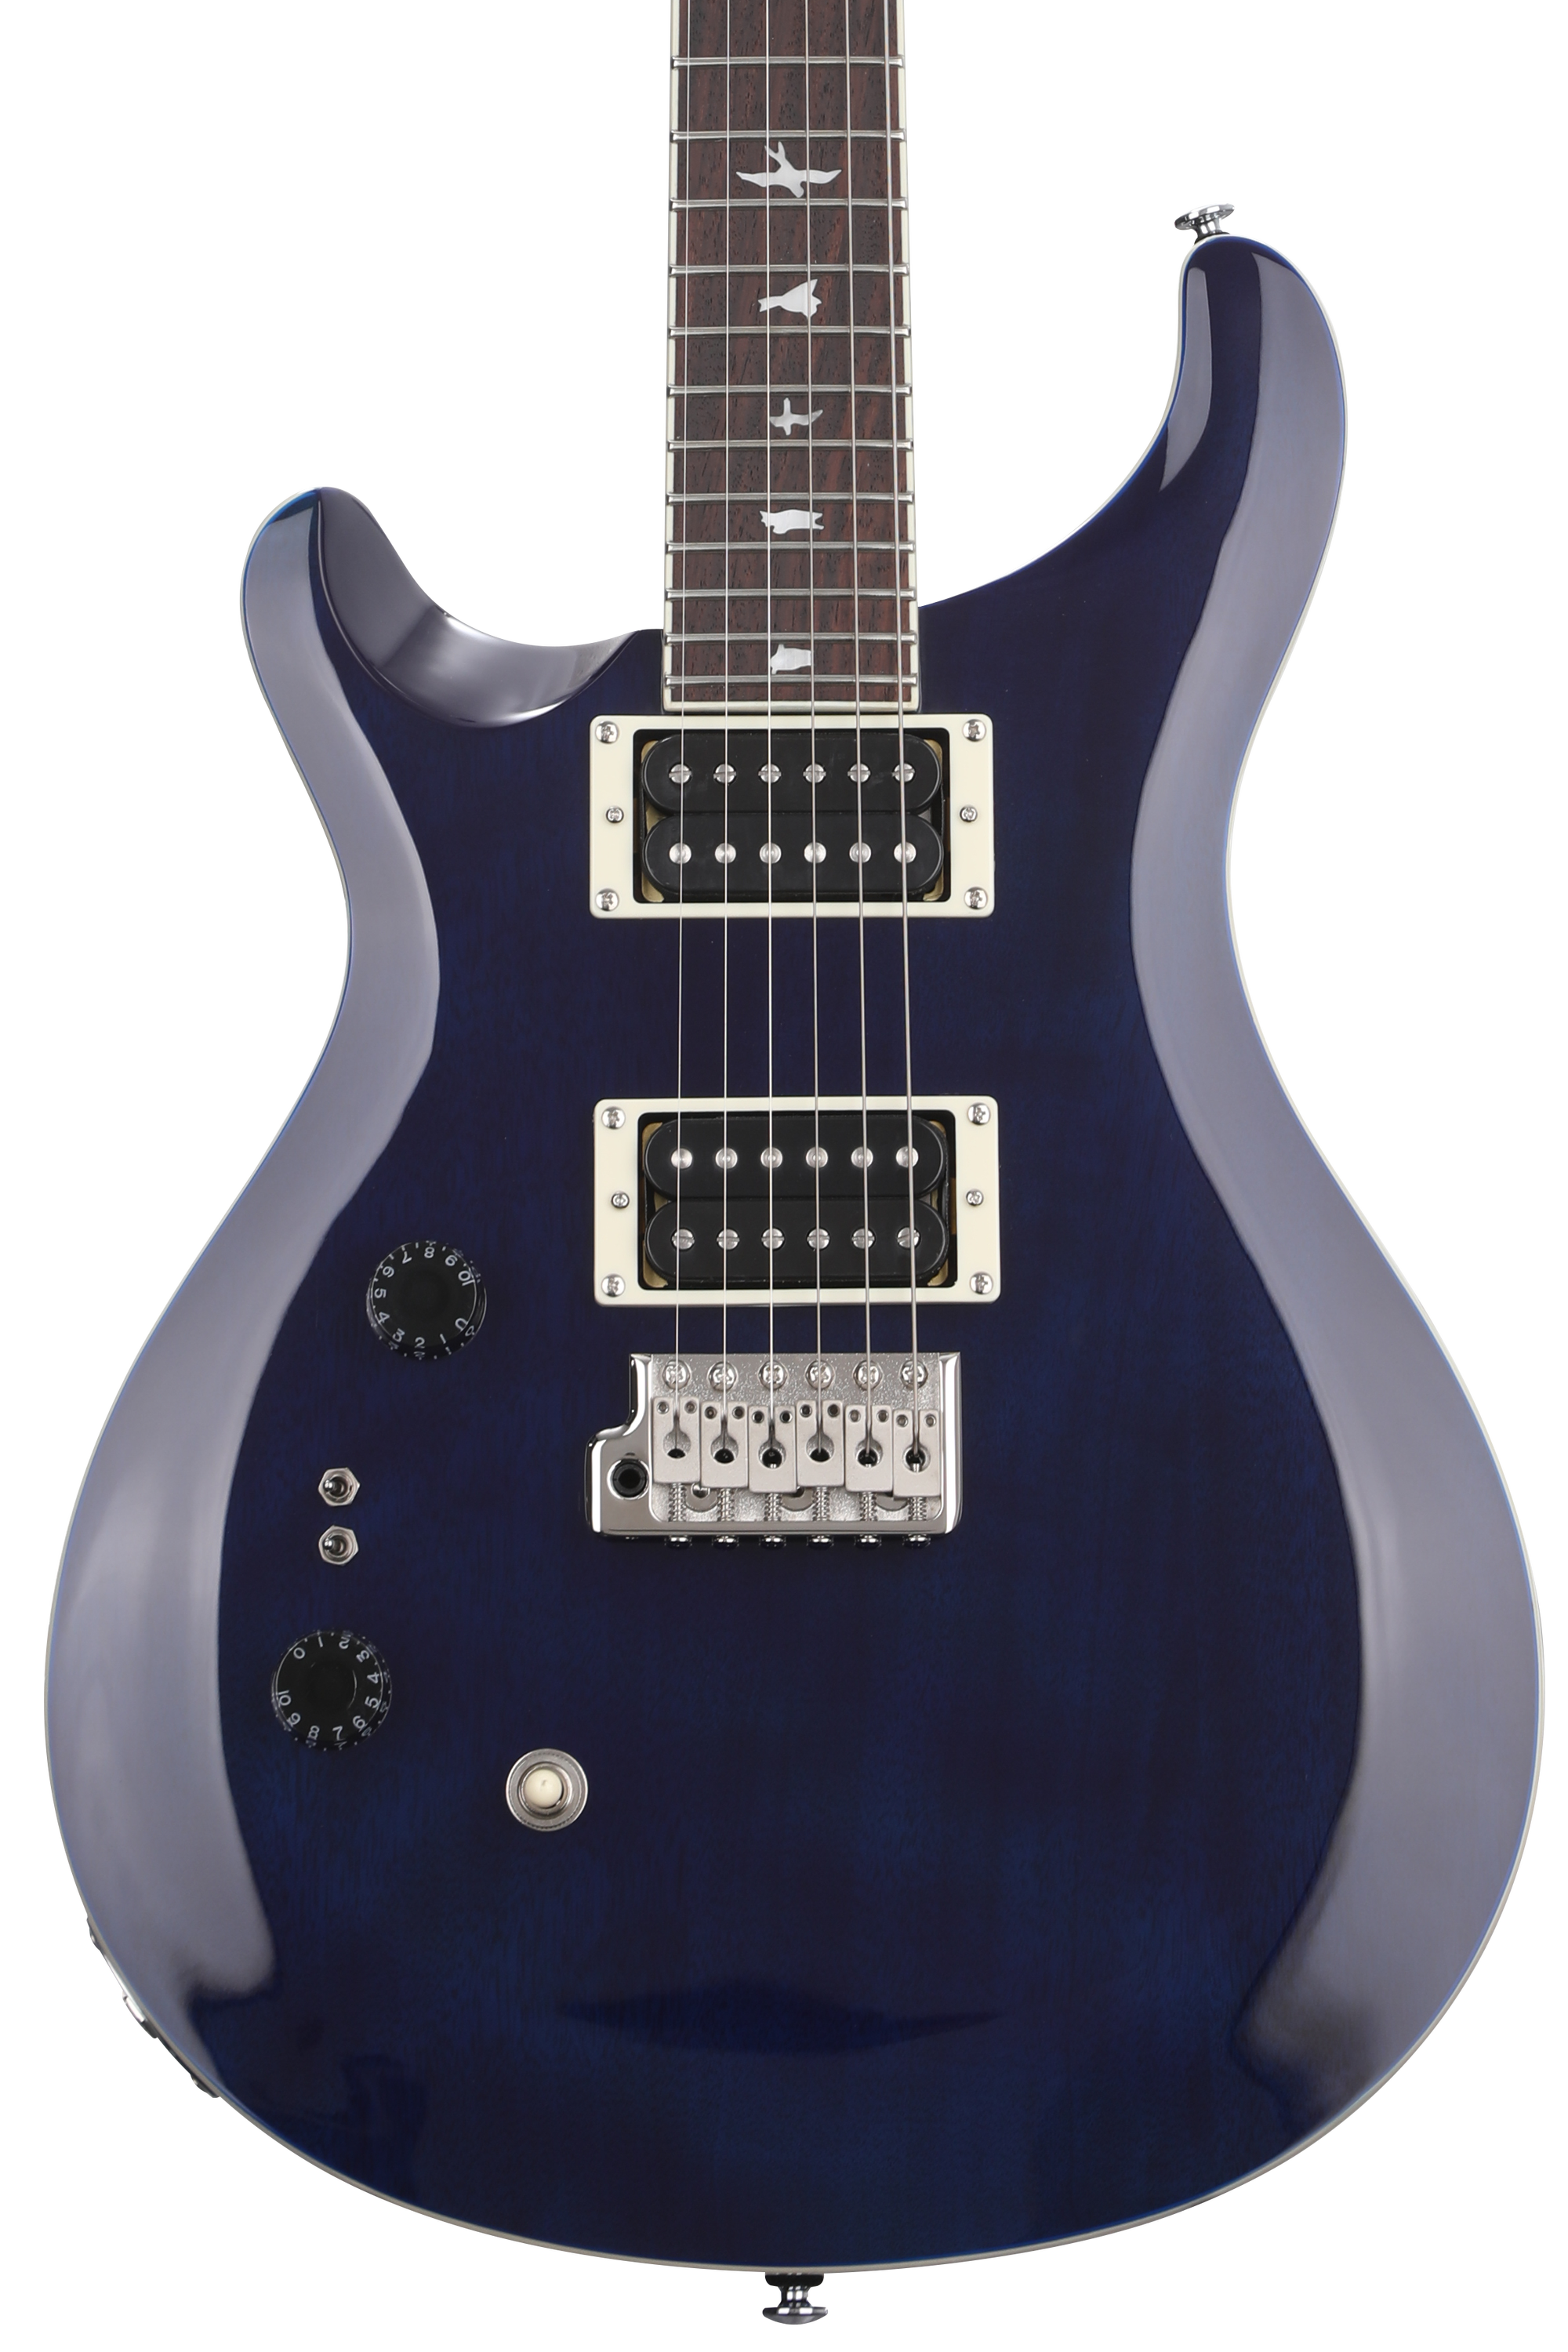 PRS SE Standard 24-08 Left-handed Electric Guitar - Translucent 